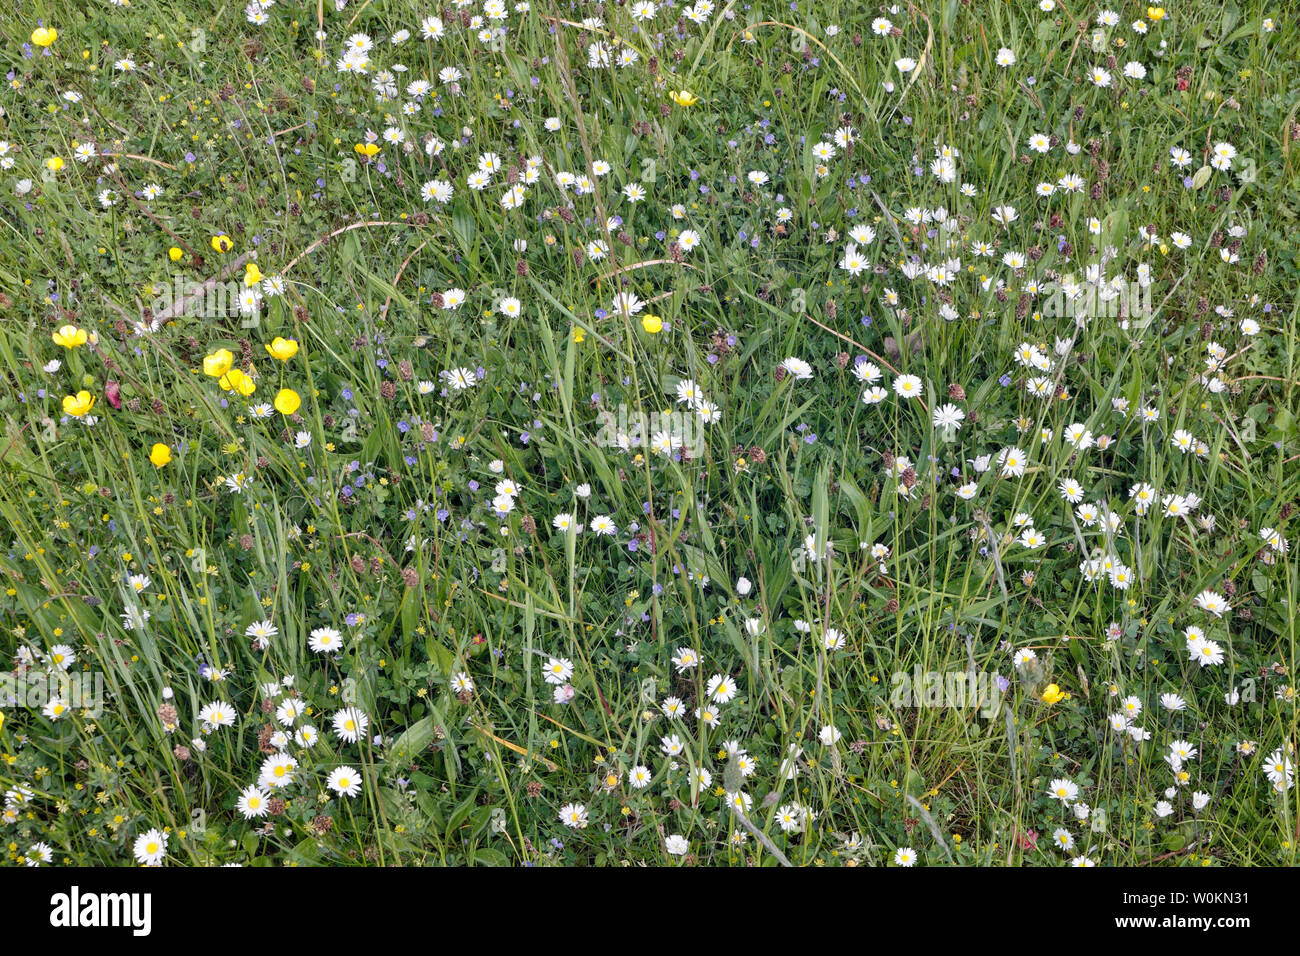 wild flower meadow in field Stock Photo